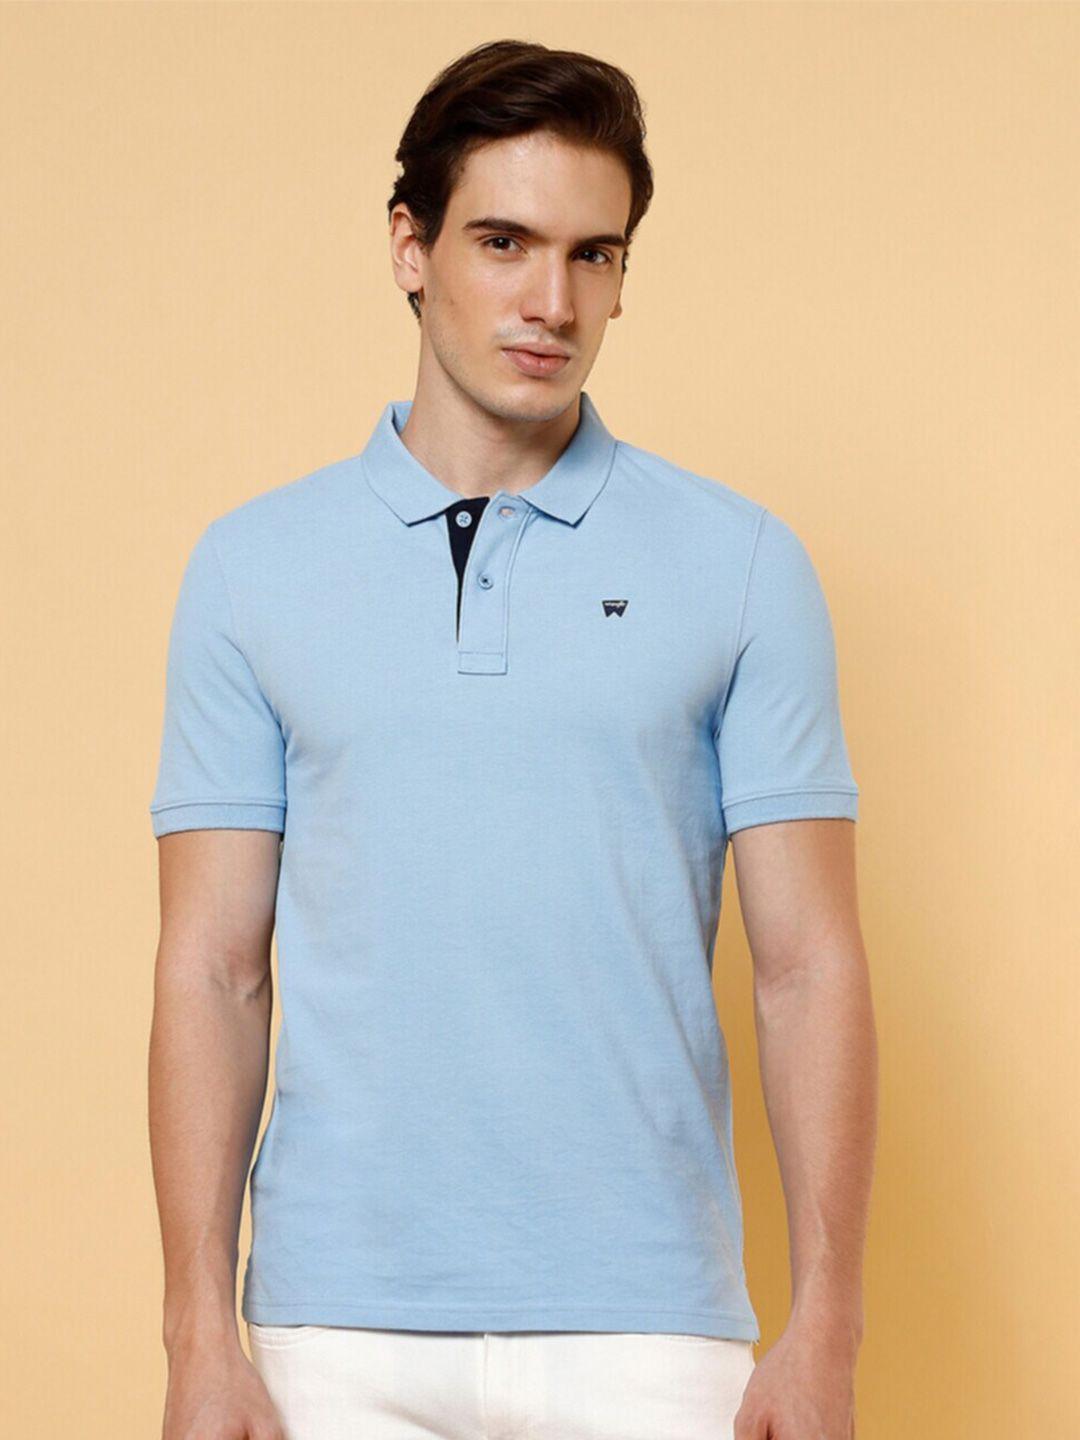 wrangler-polo-collar-short-sleeves-cotton-t-shirt